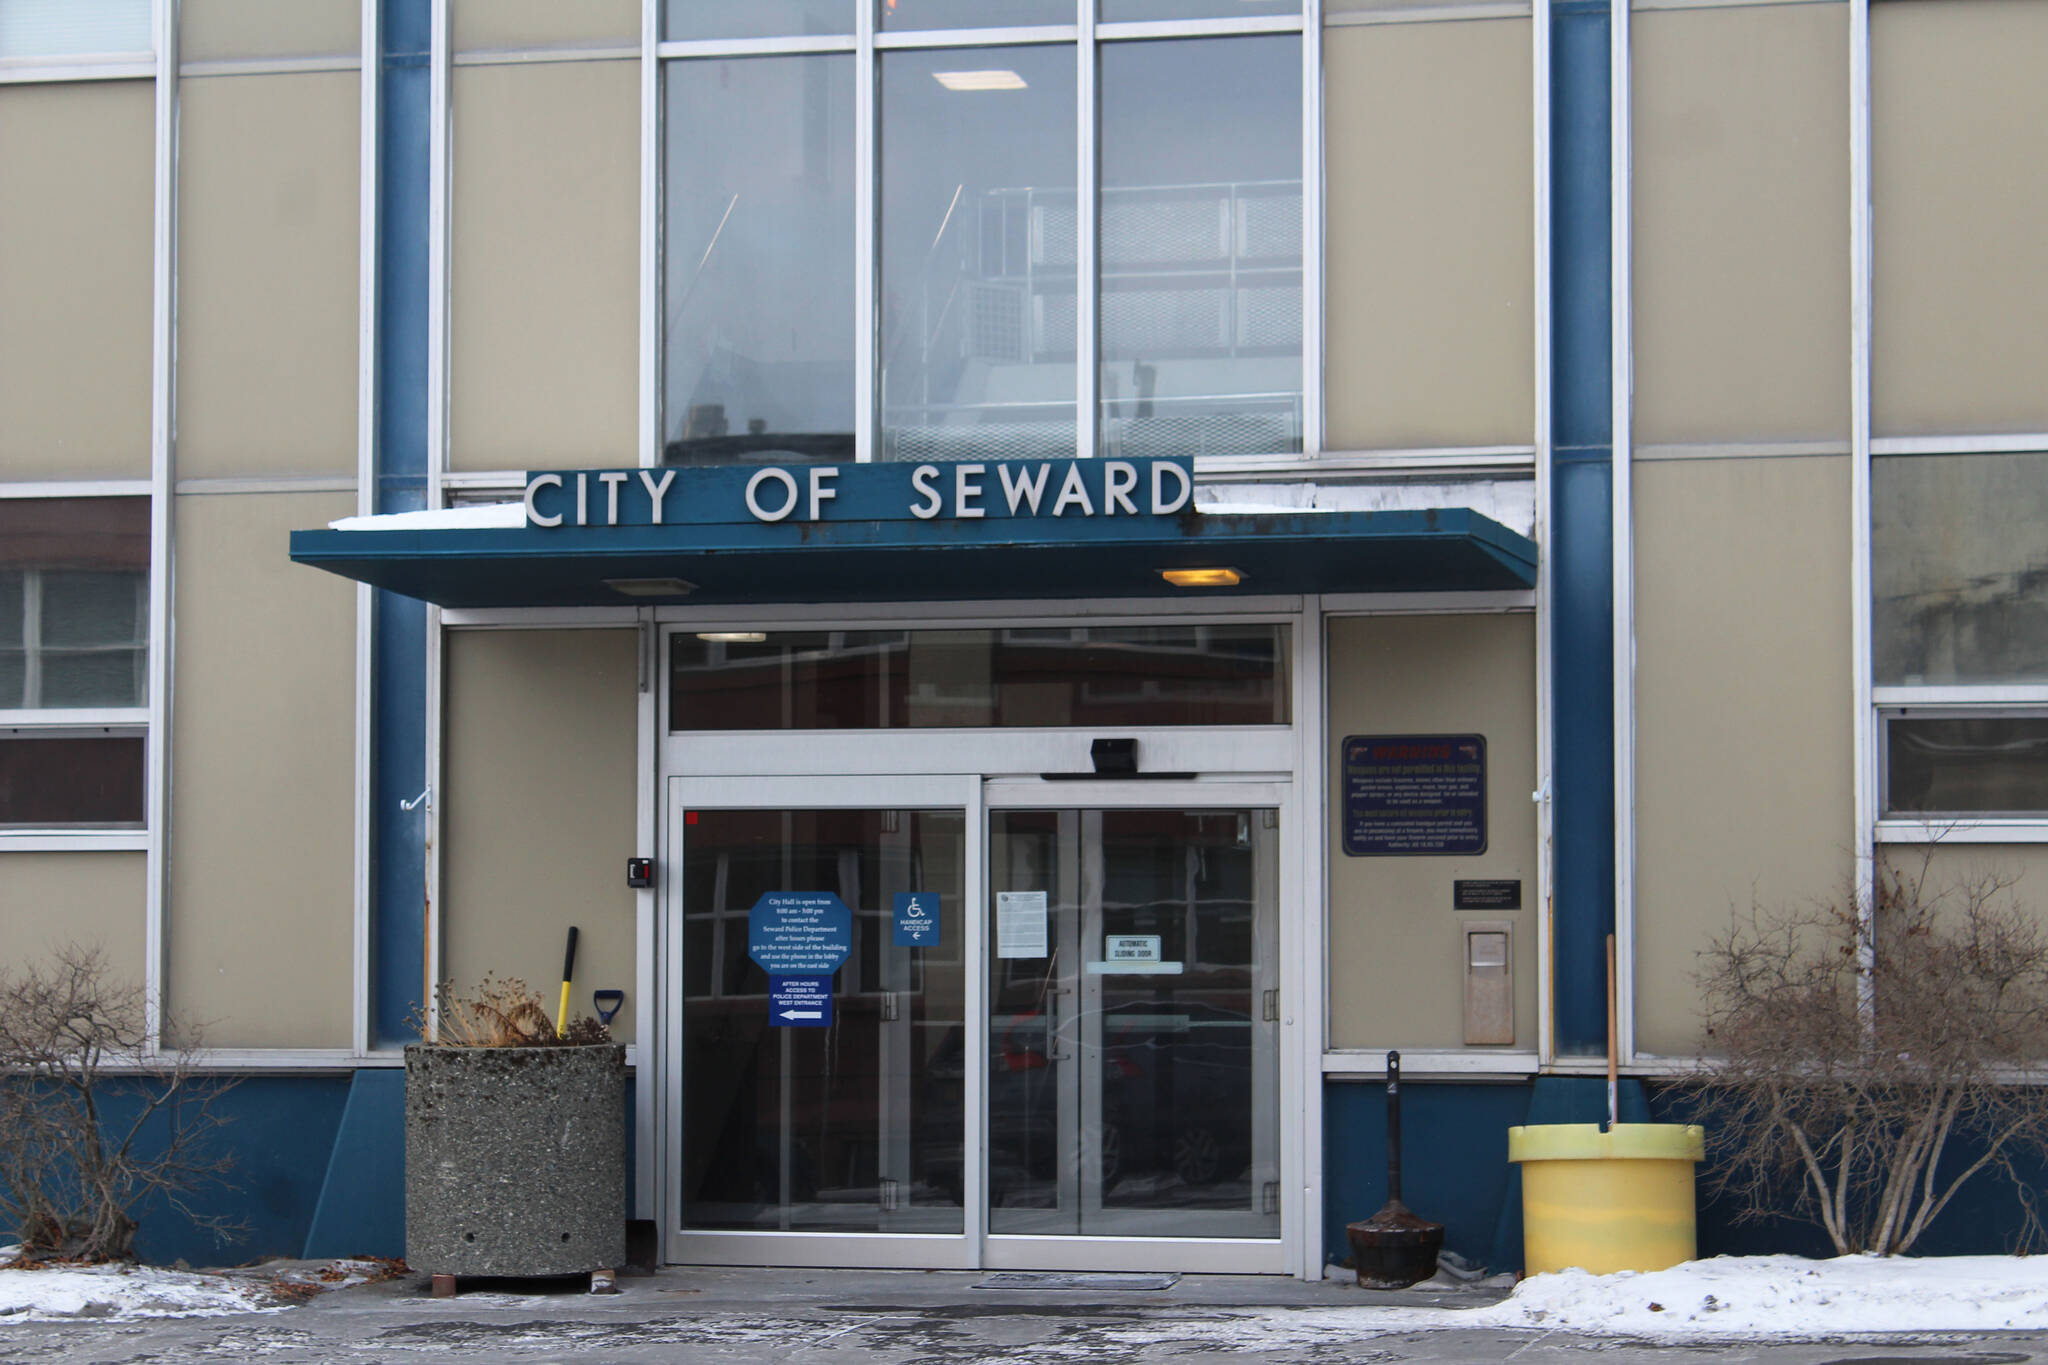 Signs direct visitors at Seward City Hall on Sunday, Nov. 28, 2021 in Seward, Alaska. (Ashlyn O'Hara/Peninsula Clarion)